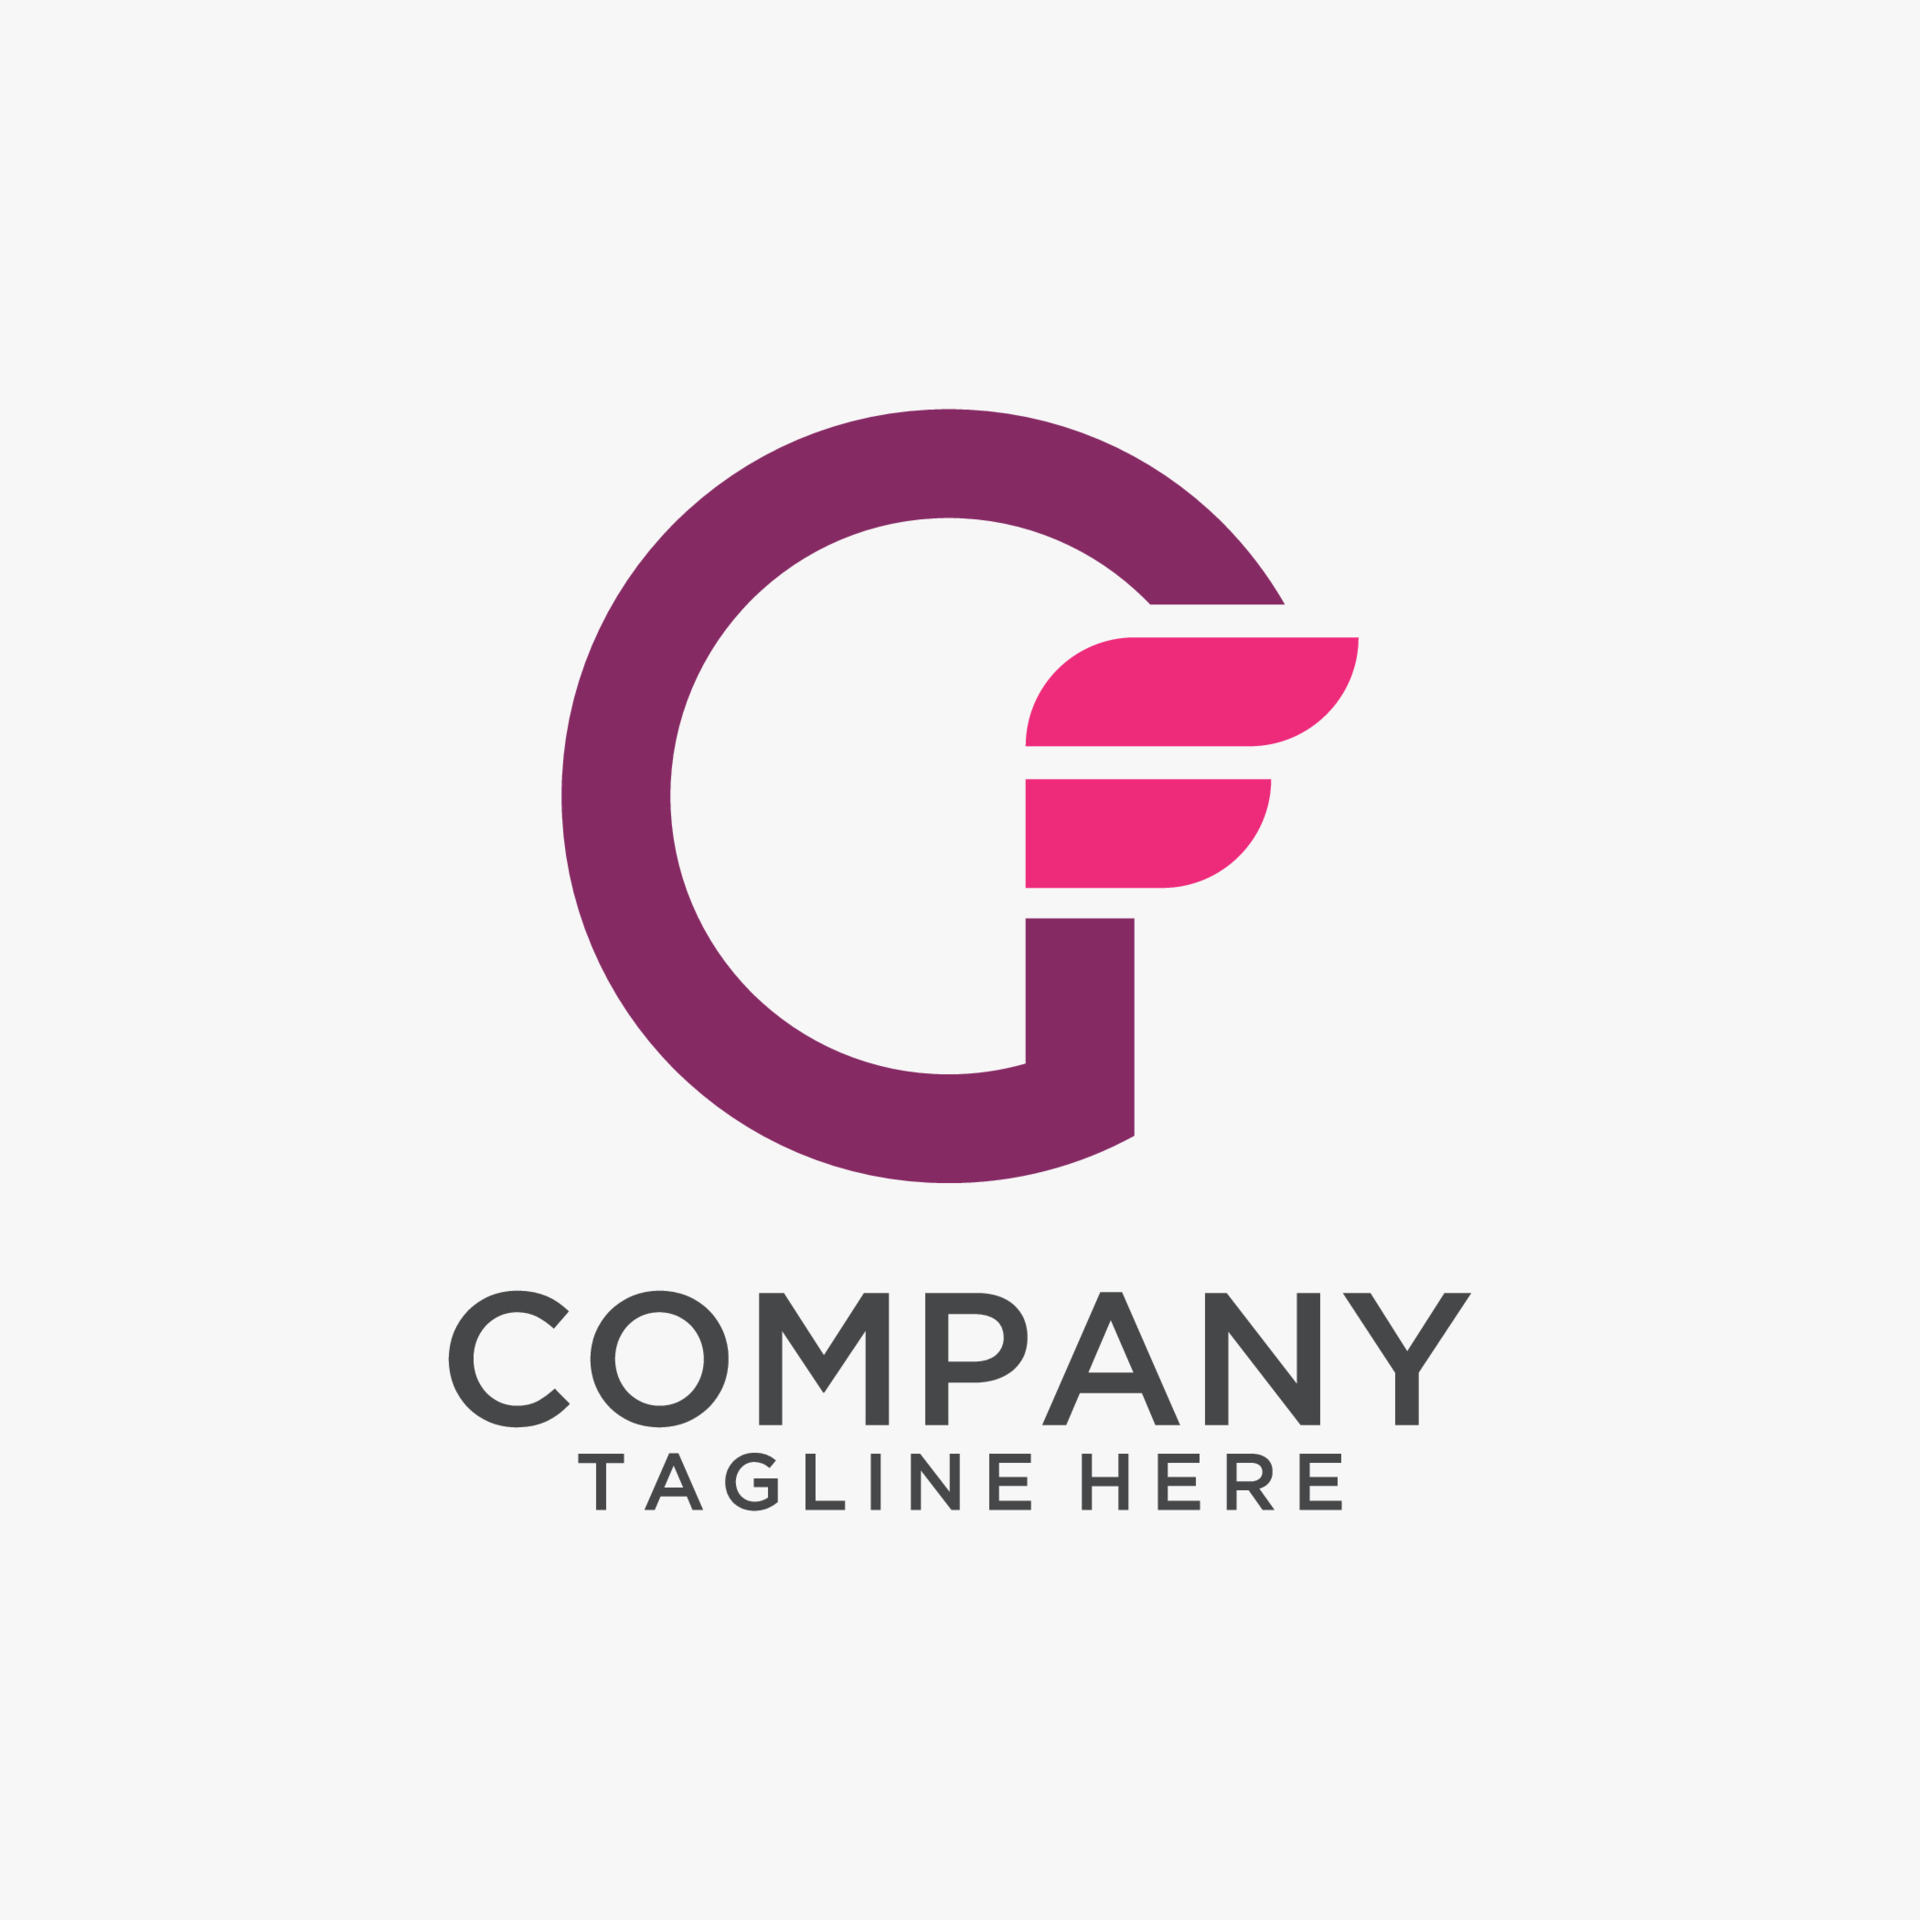 Gf letter logo icon | Letter logo, Typography logo, Logo icons